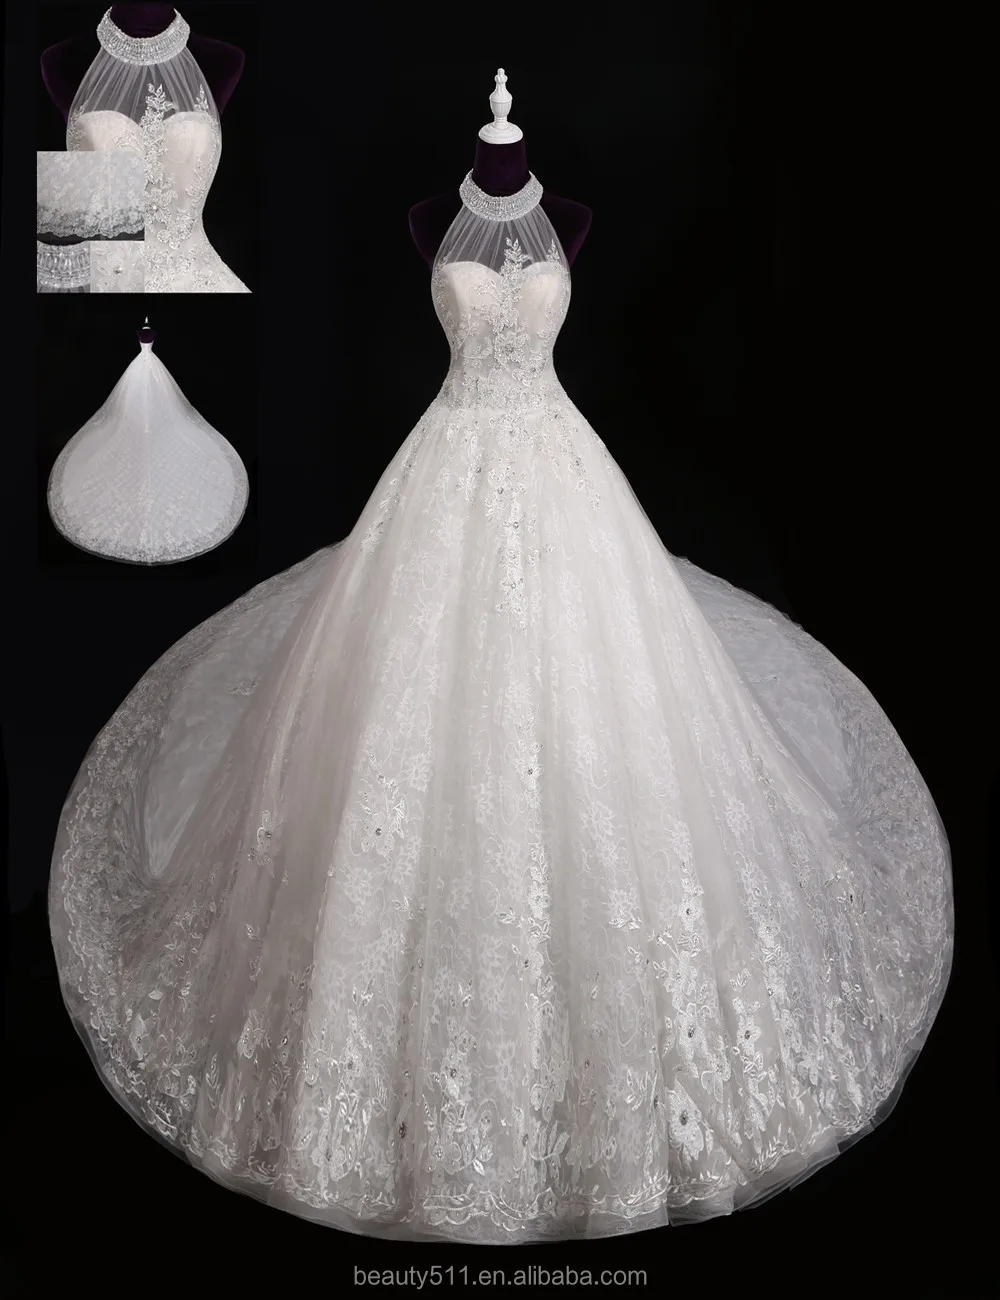 halter top ball gown wedding dress